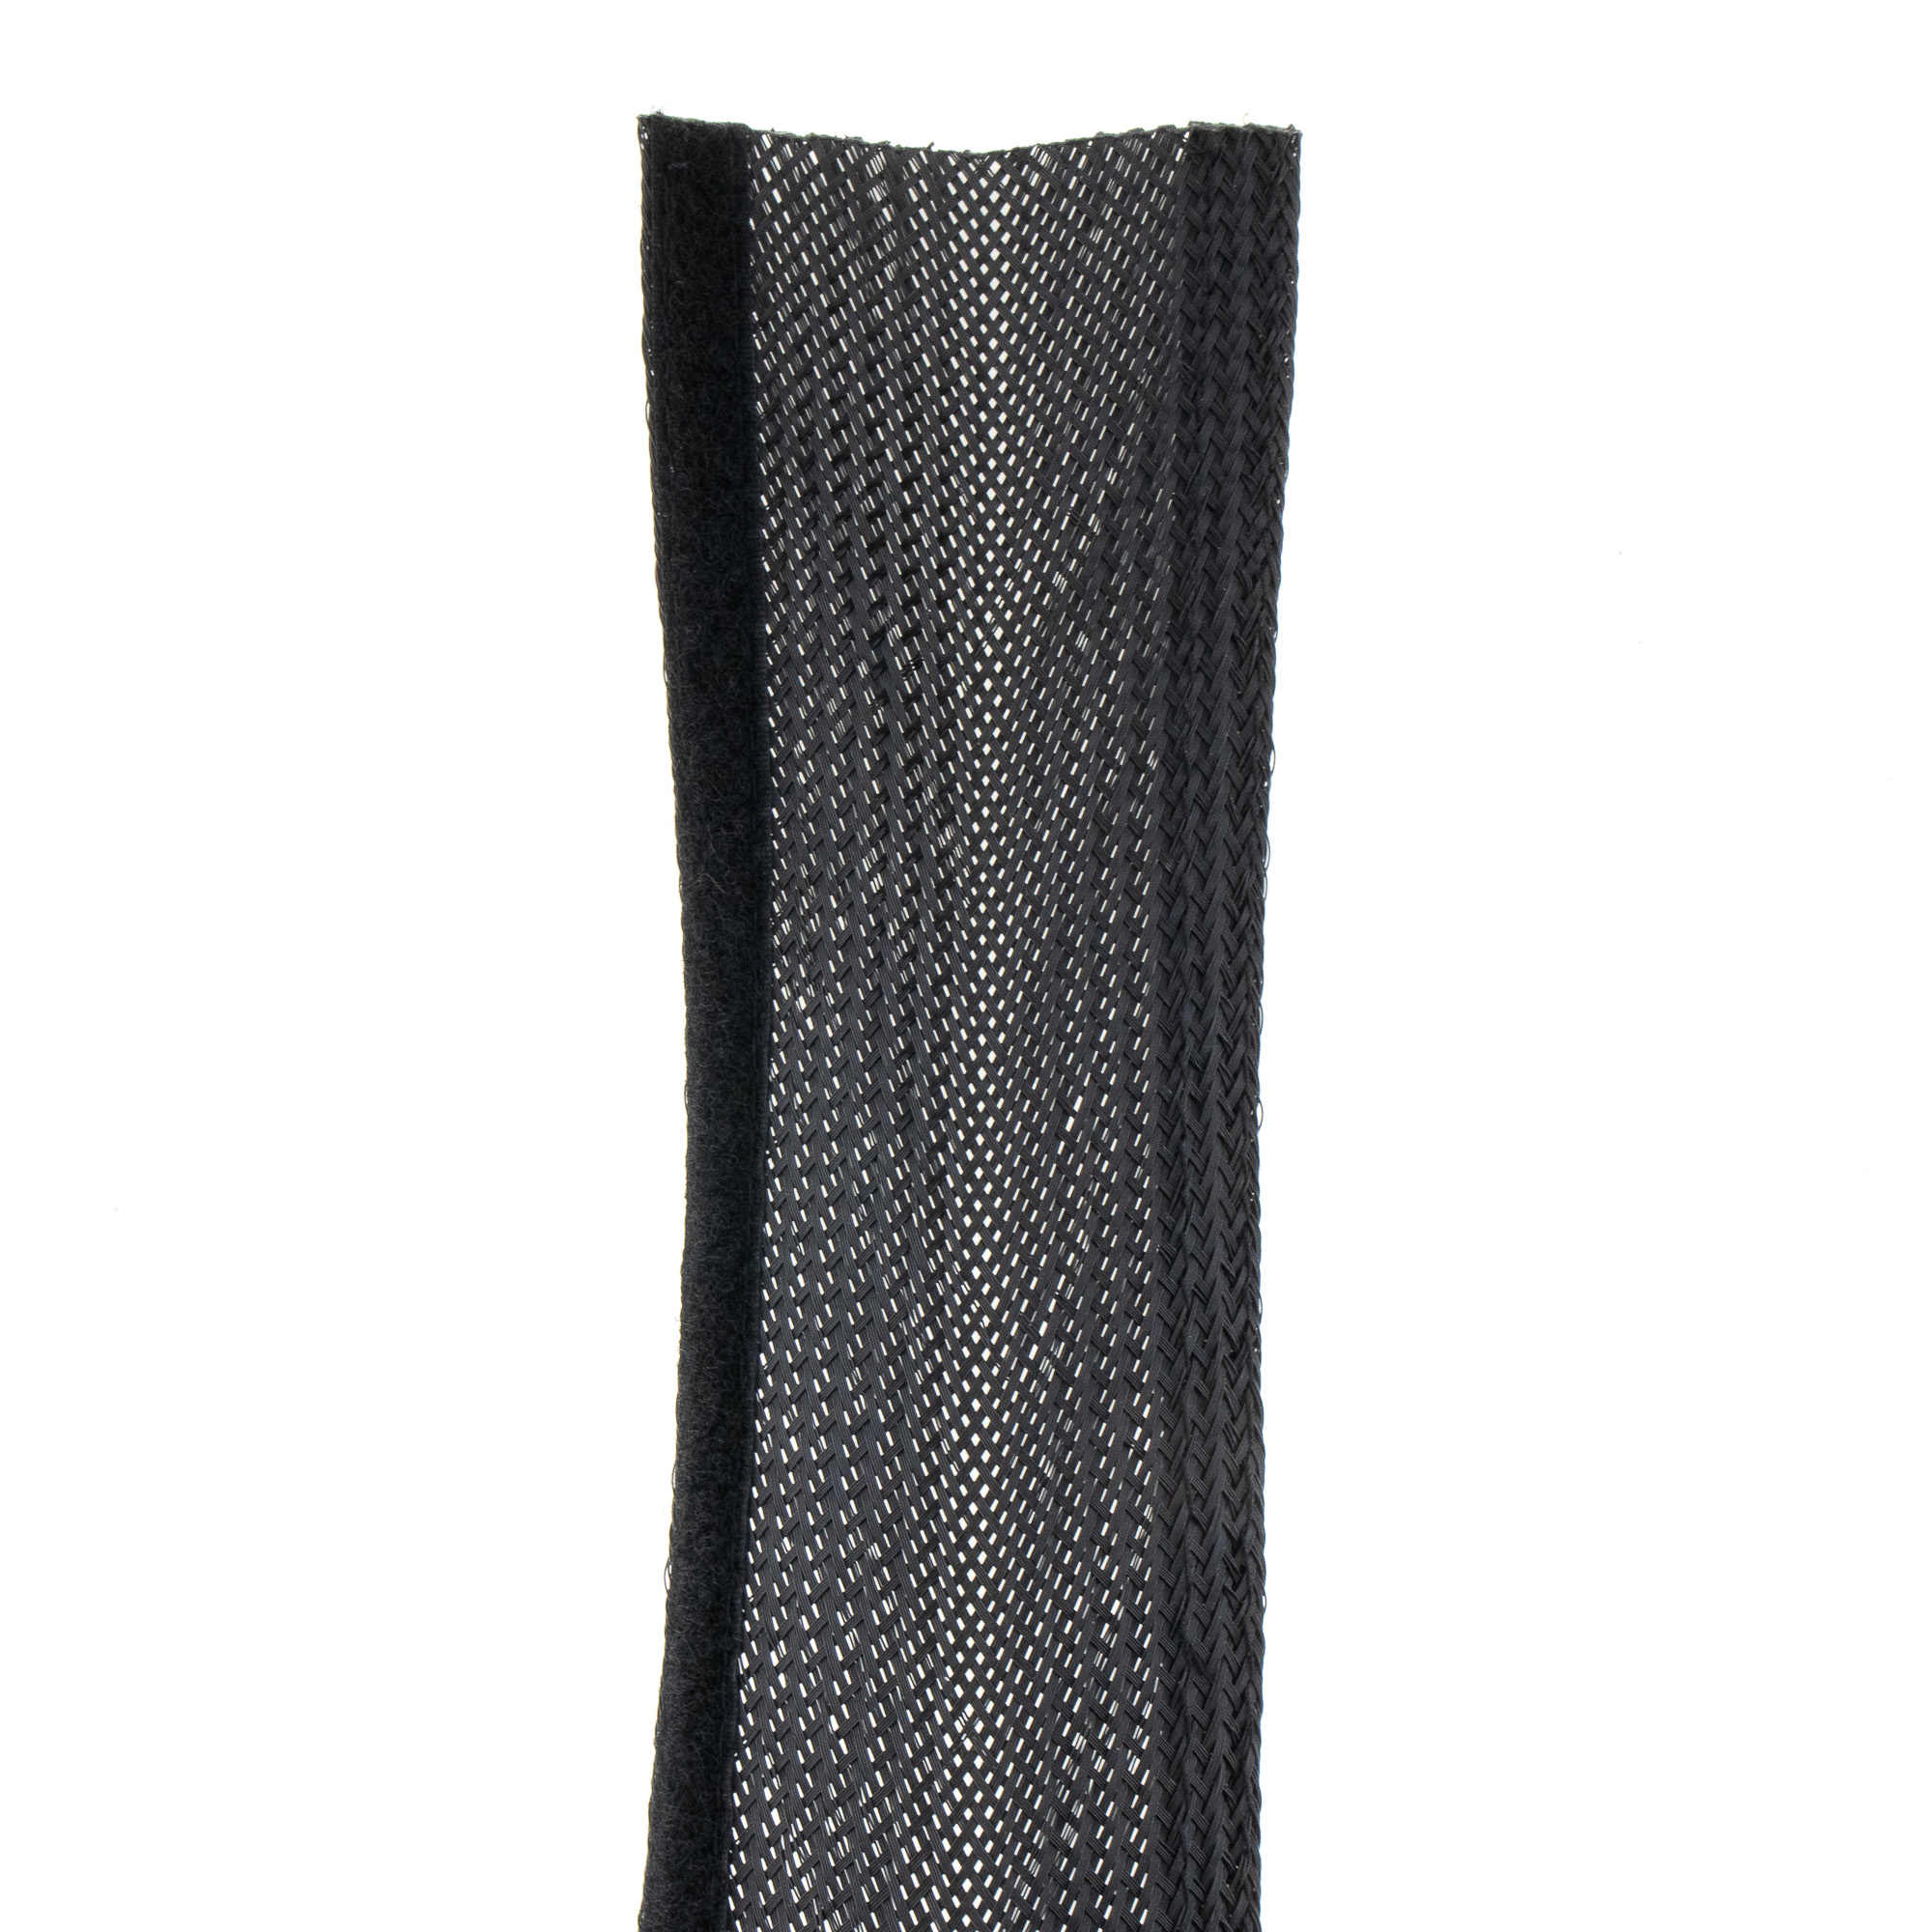 Kabelschlauch mit Klett, schwarz, 15-20mm, 2 Meter